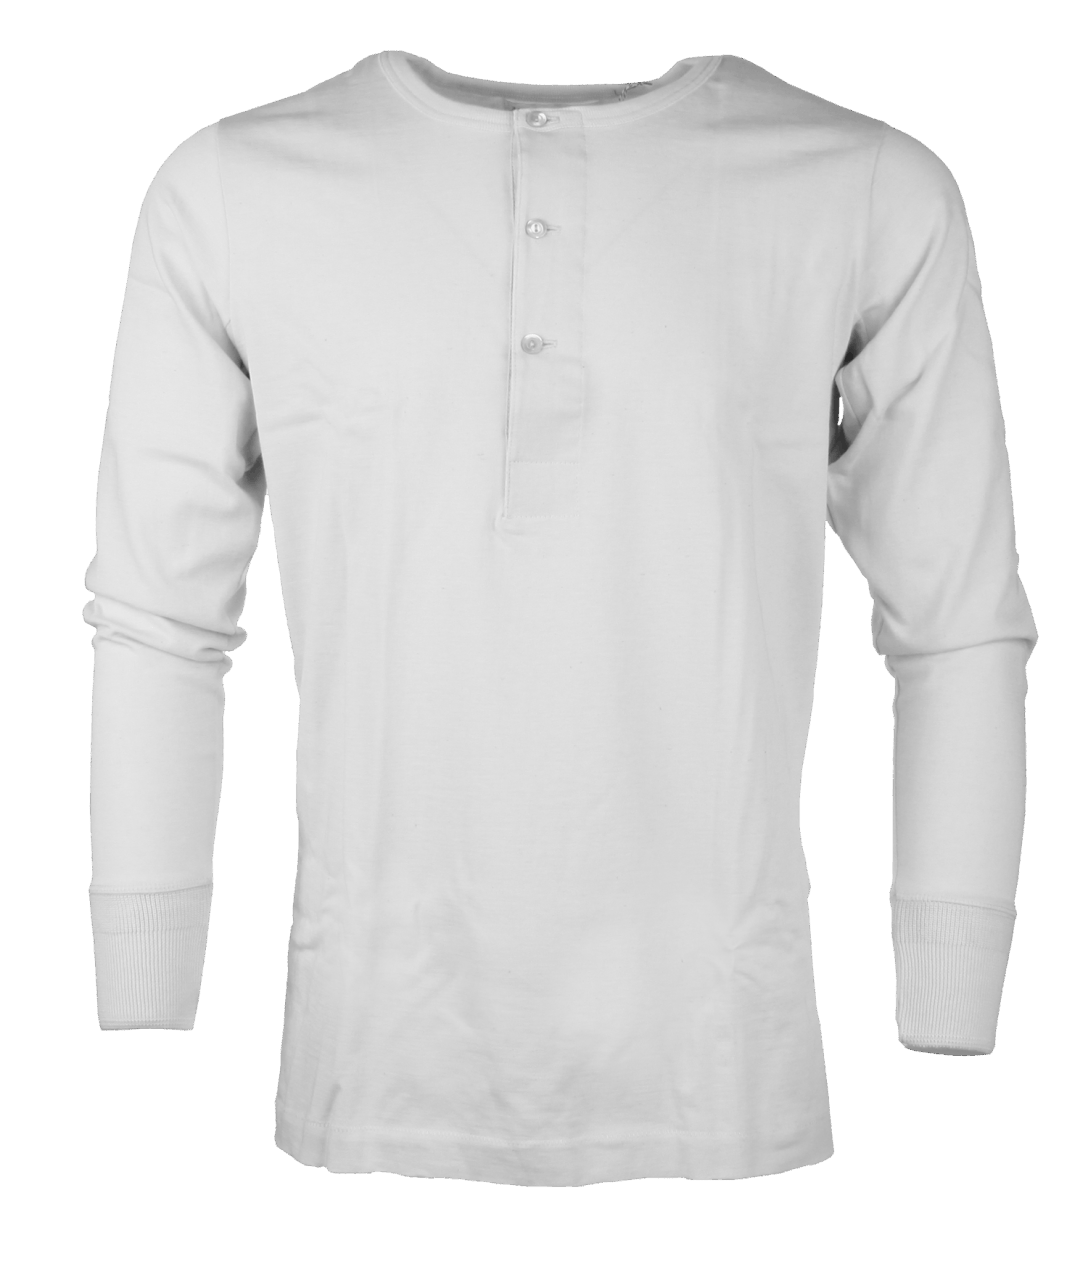 Merz beim Schwanen Shirt 206 - white